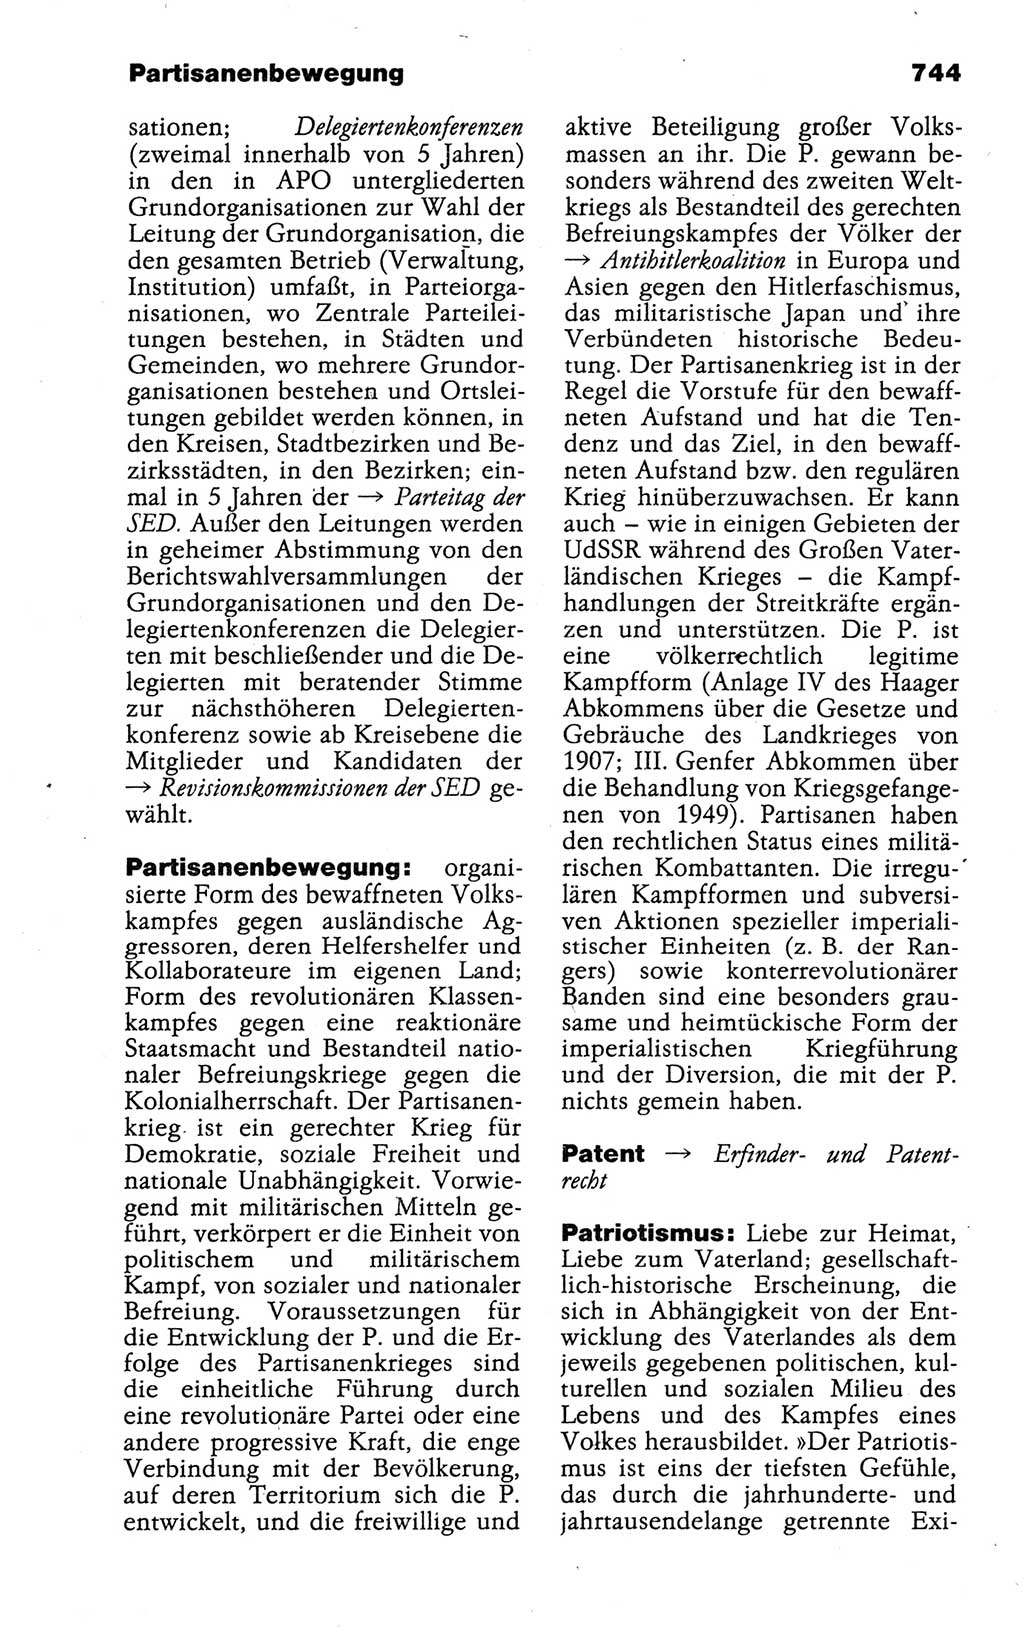 Kleines politisches Wörterbuch [Deutsche Demokratische Republik (DDR)] 1988, Seite 744 (Kl. pol. Wb. DDR 1988, S. 744)